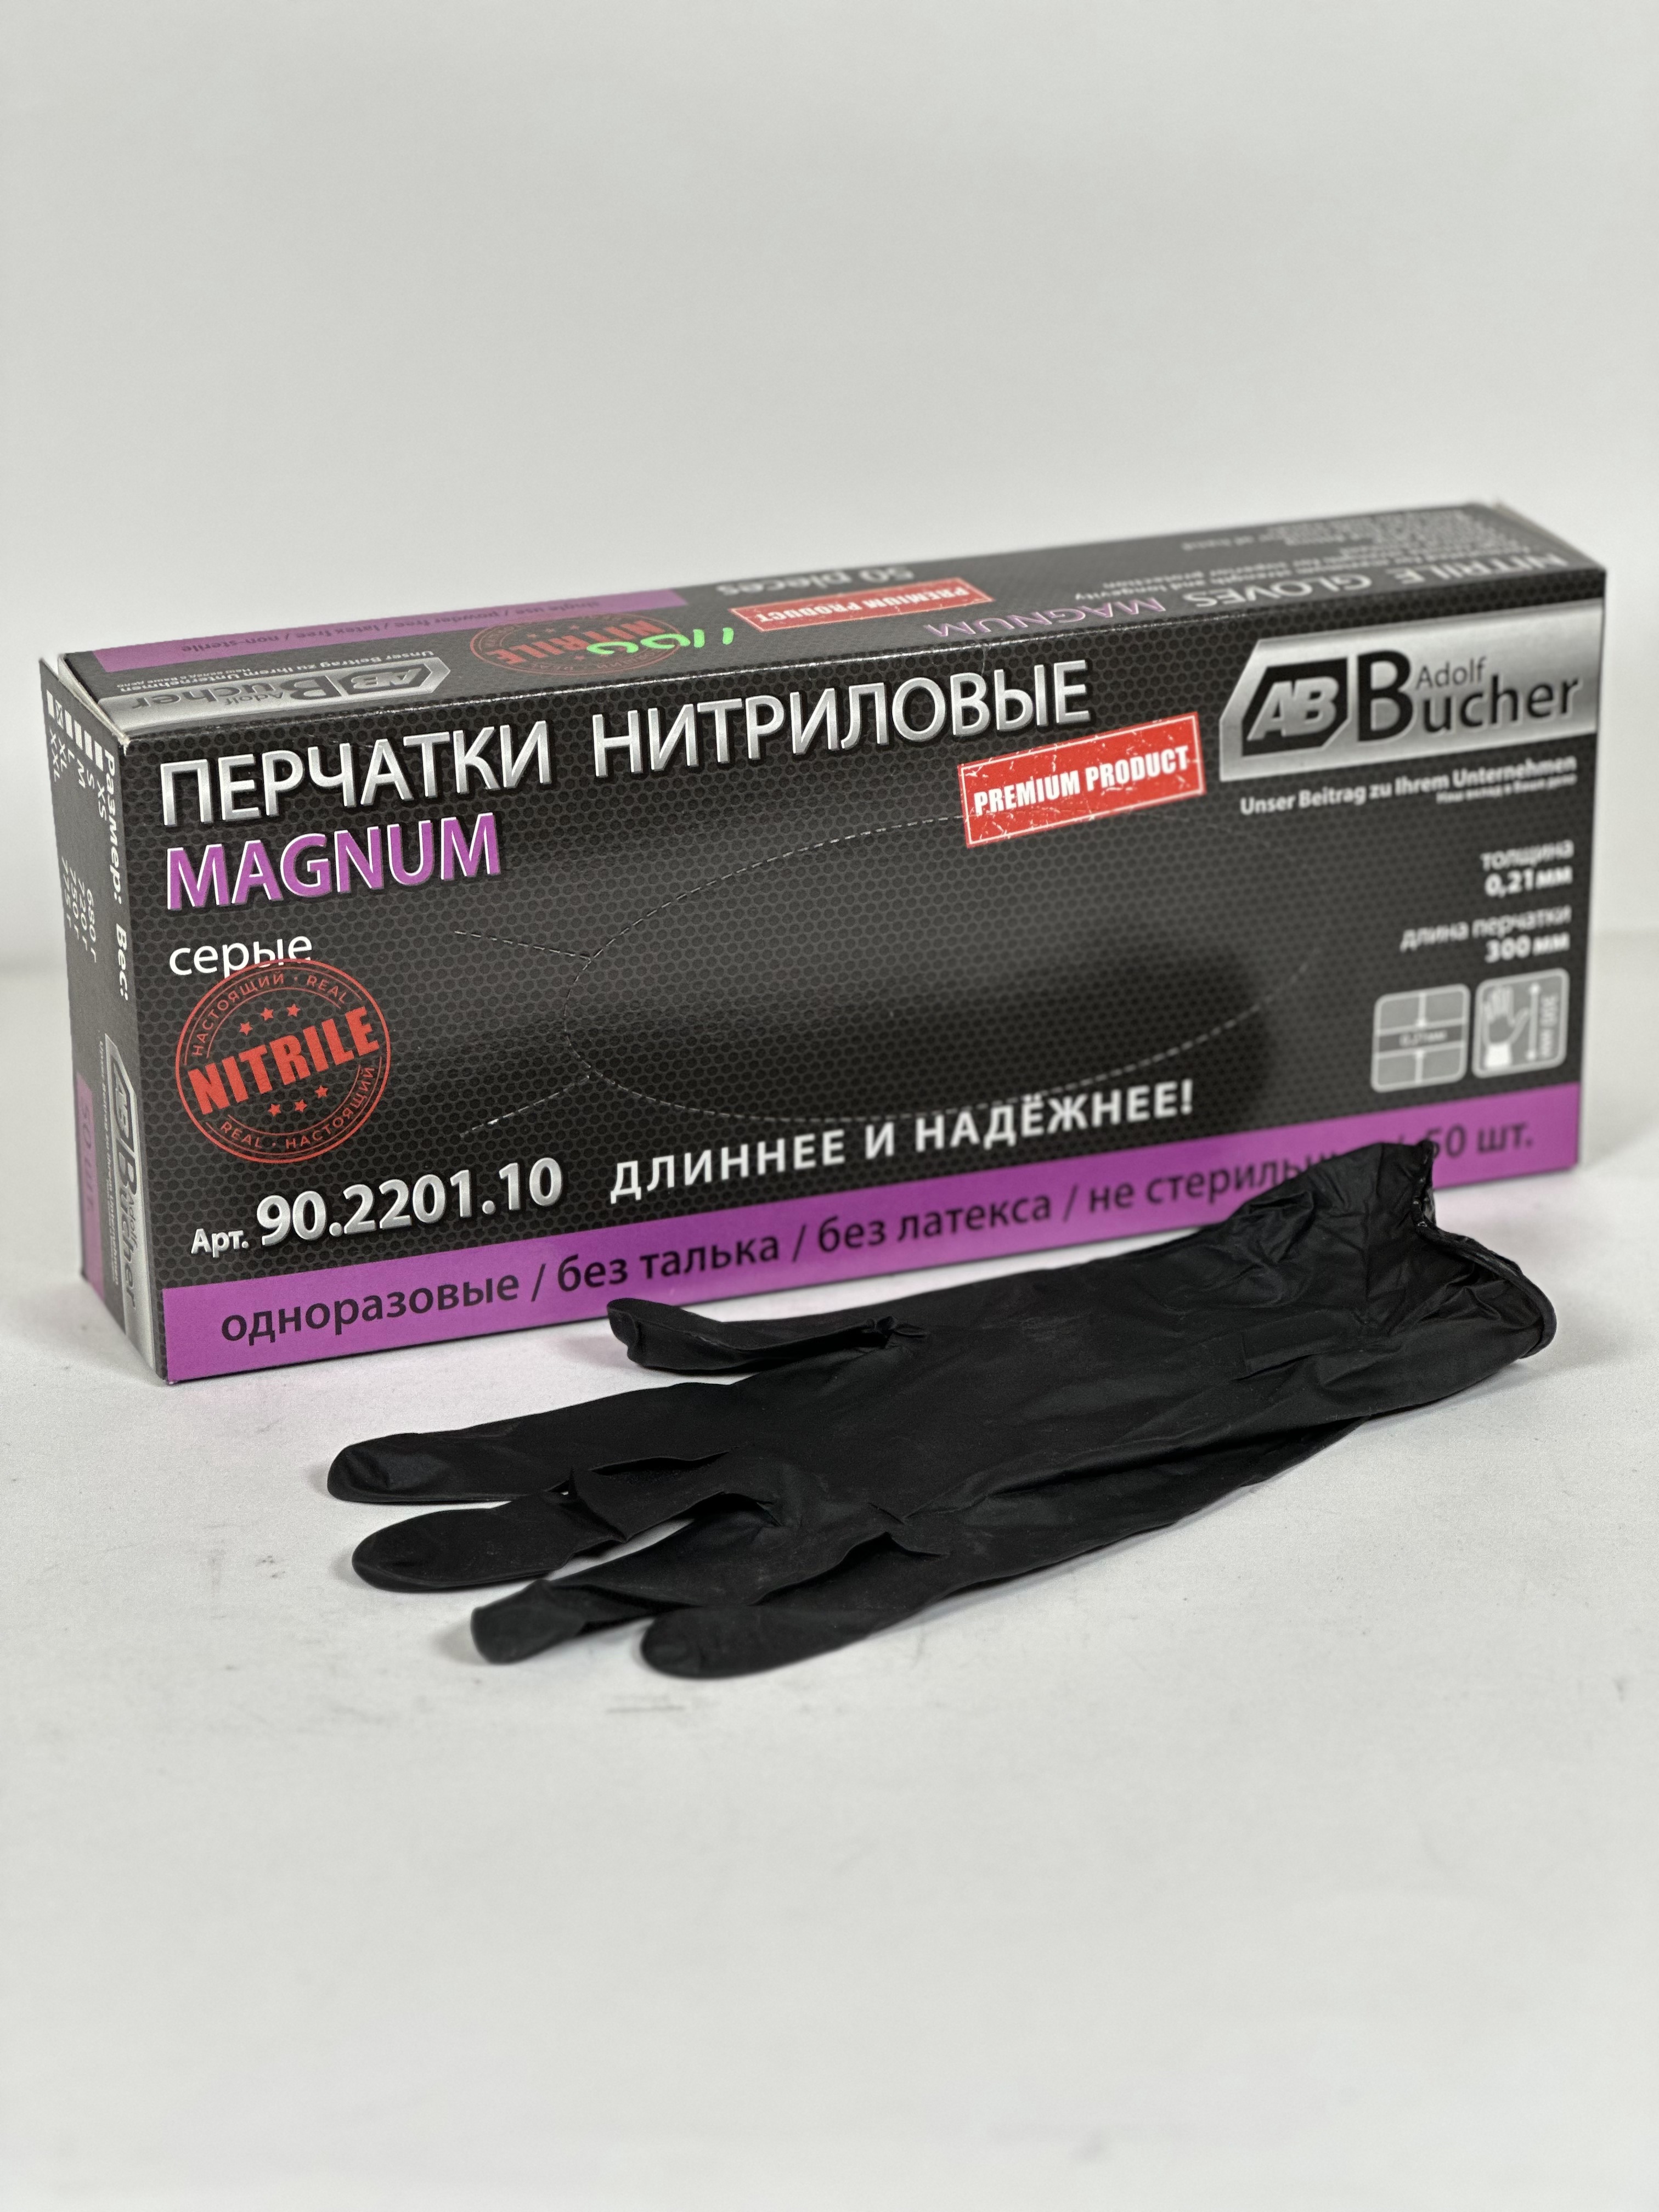 90.2200.10 Перчатки черные Magnum Магнум, размер XL,300мм, толщина 0,21мм, 695 гр.